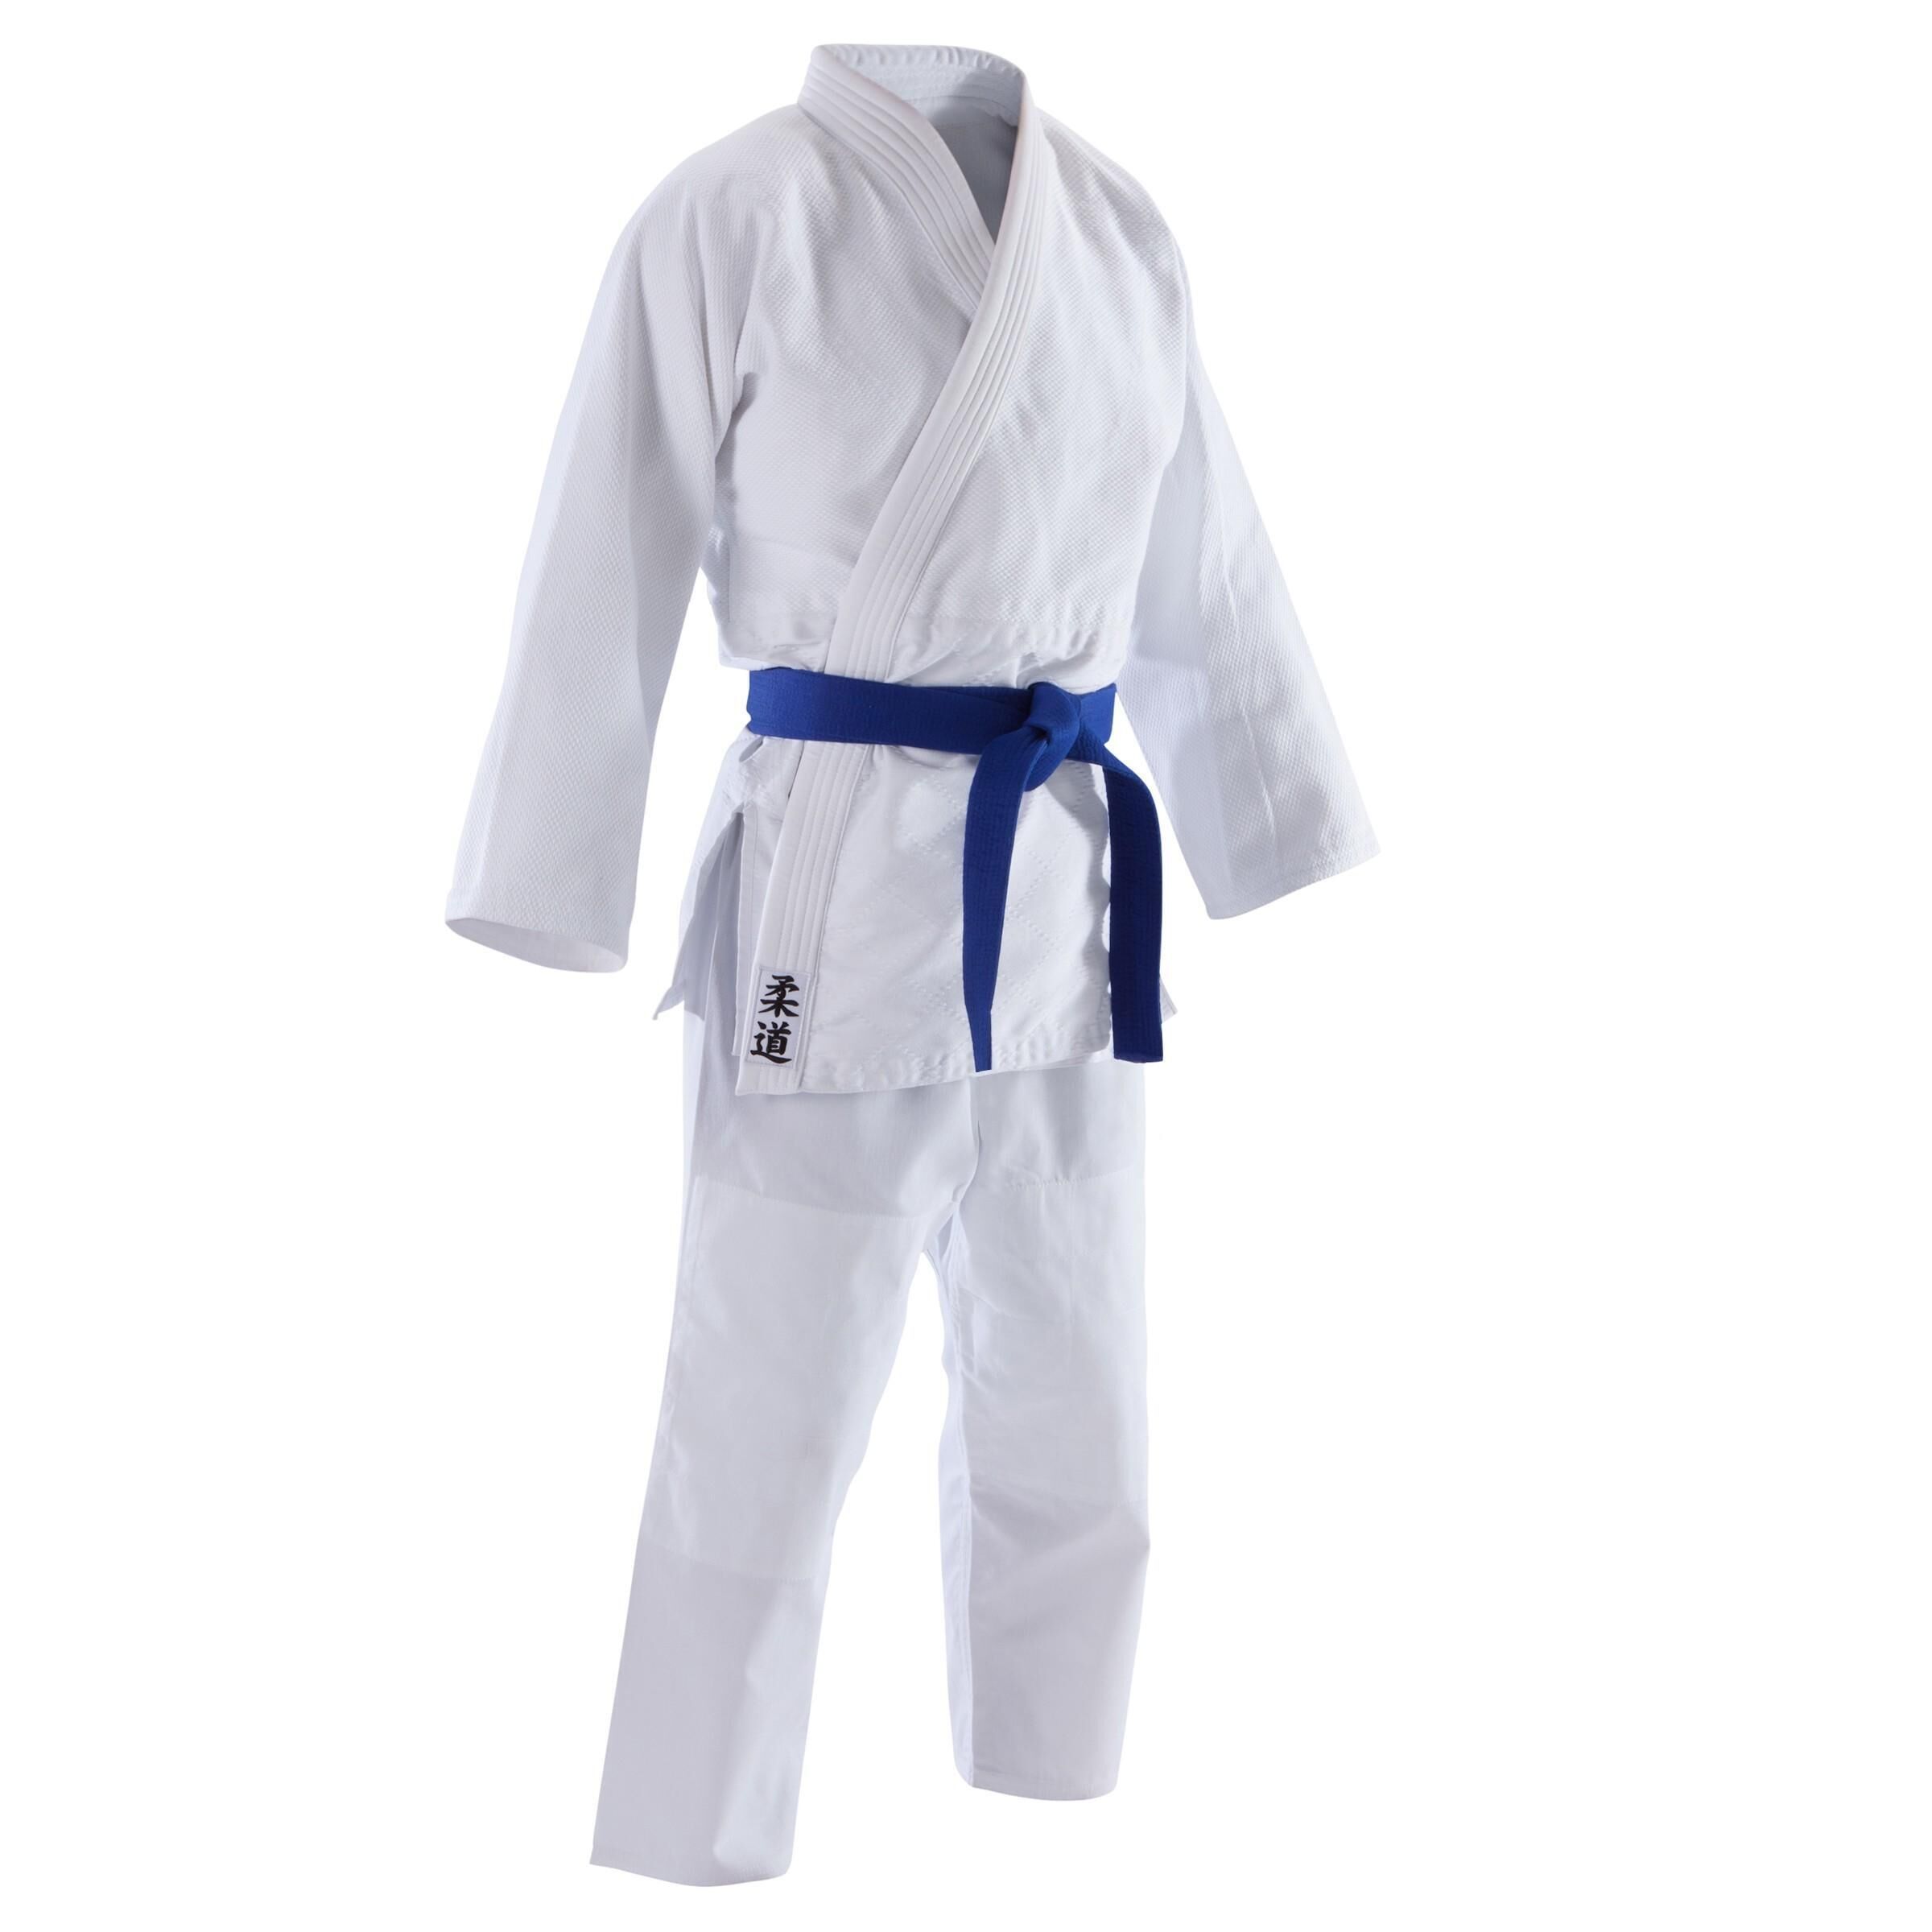 OUTSHOCK Refurbished Adult Judo Aikido Uniform 500 - A Grade